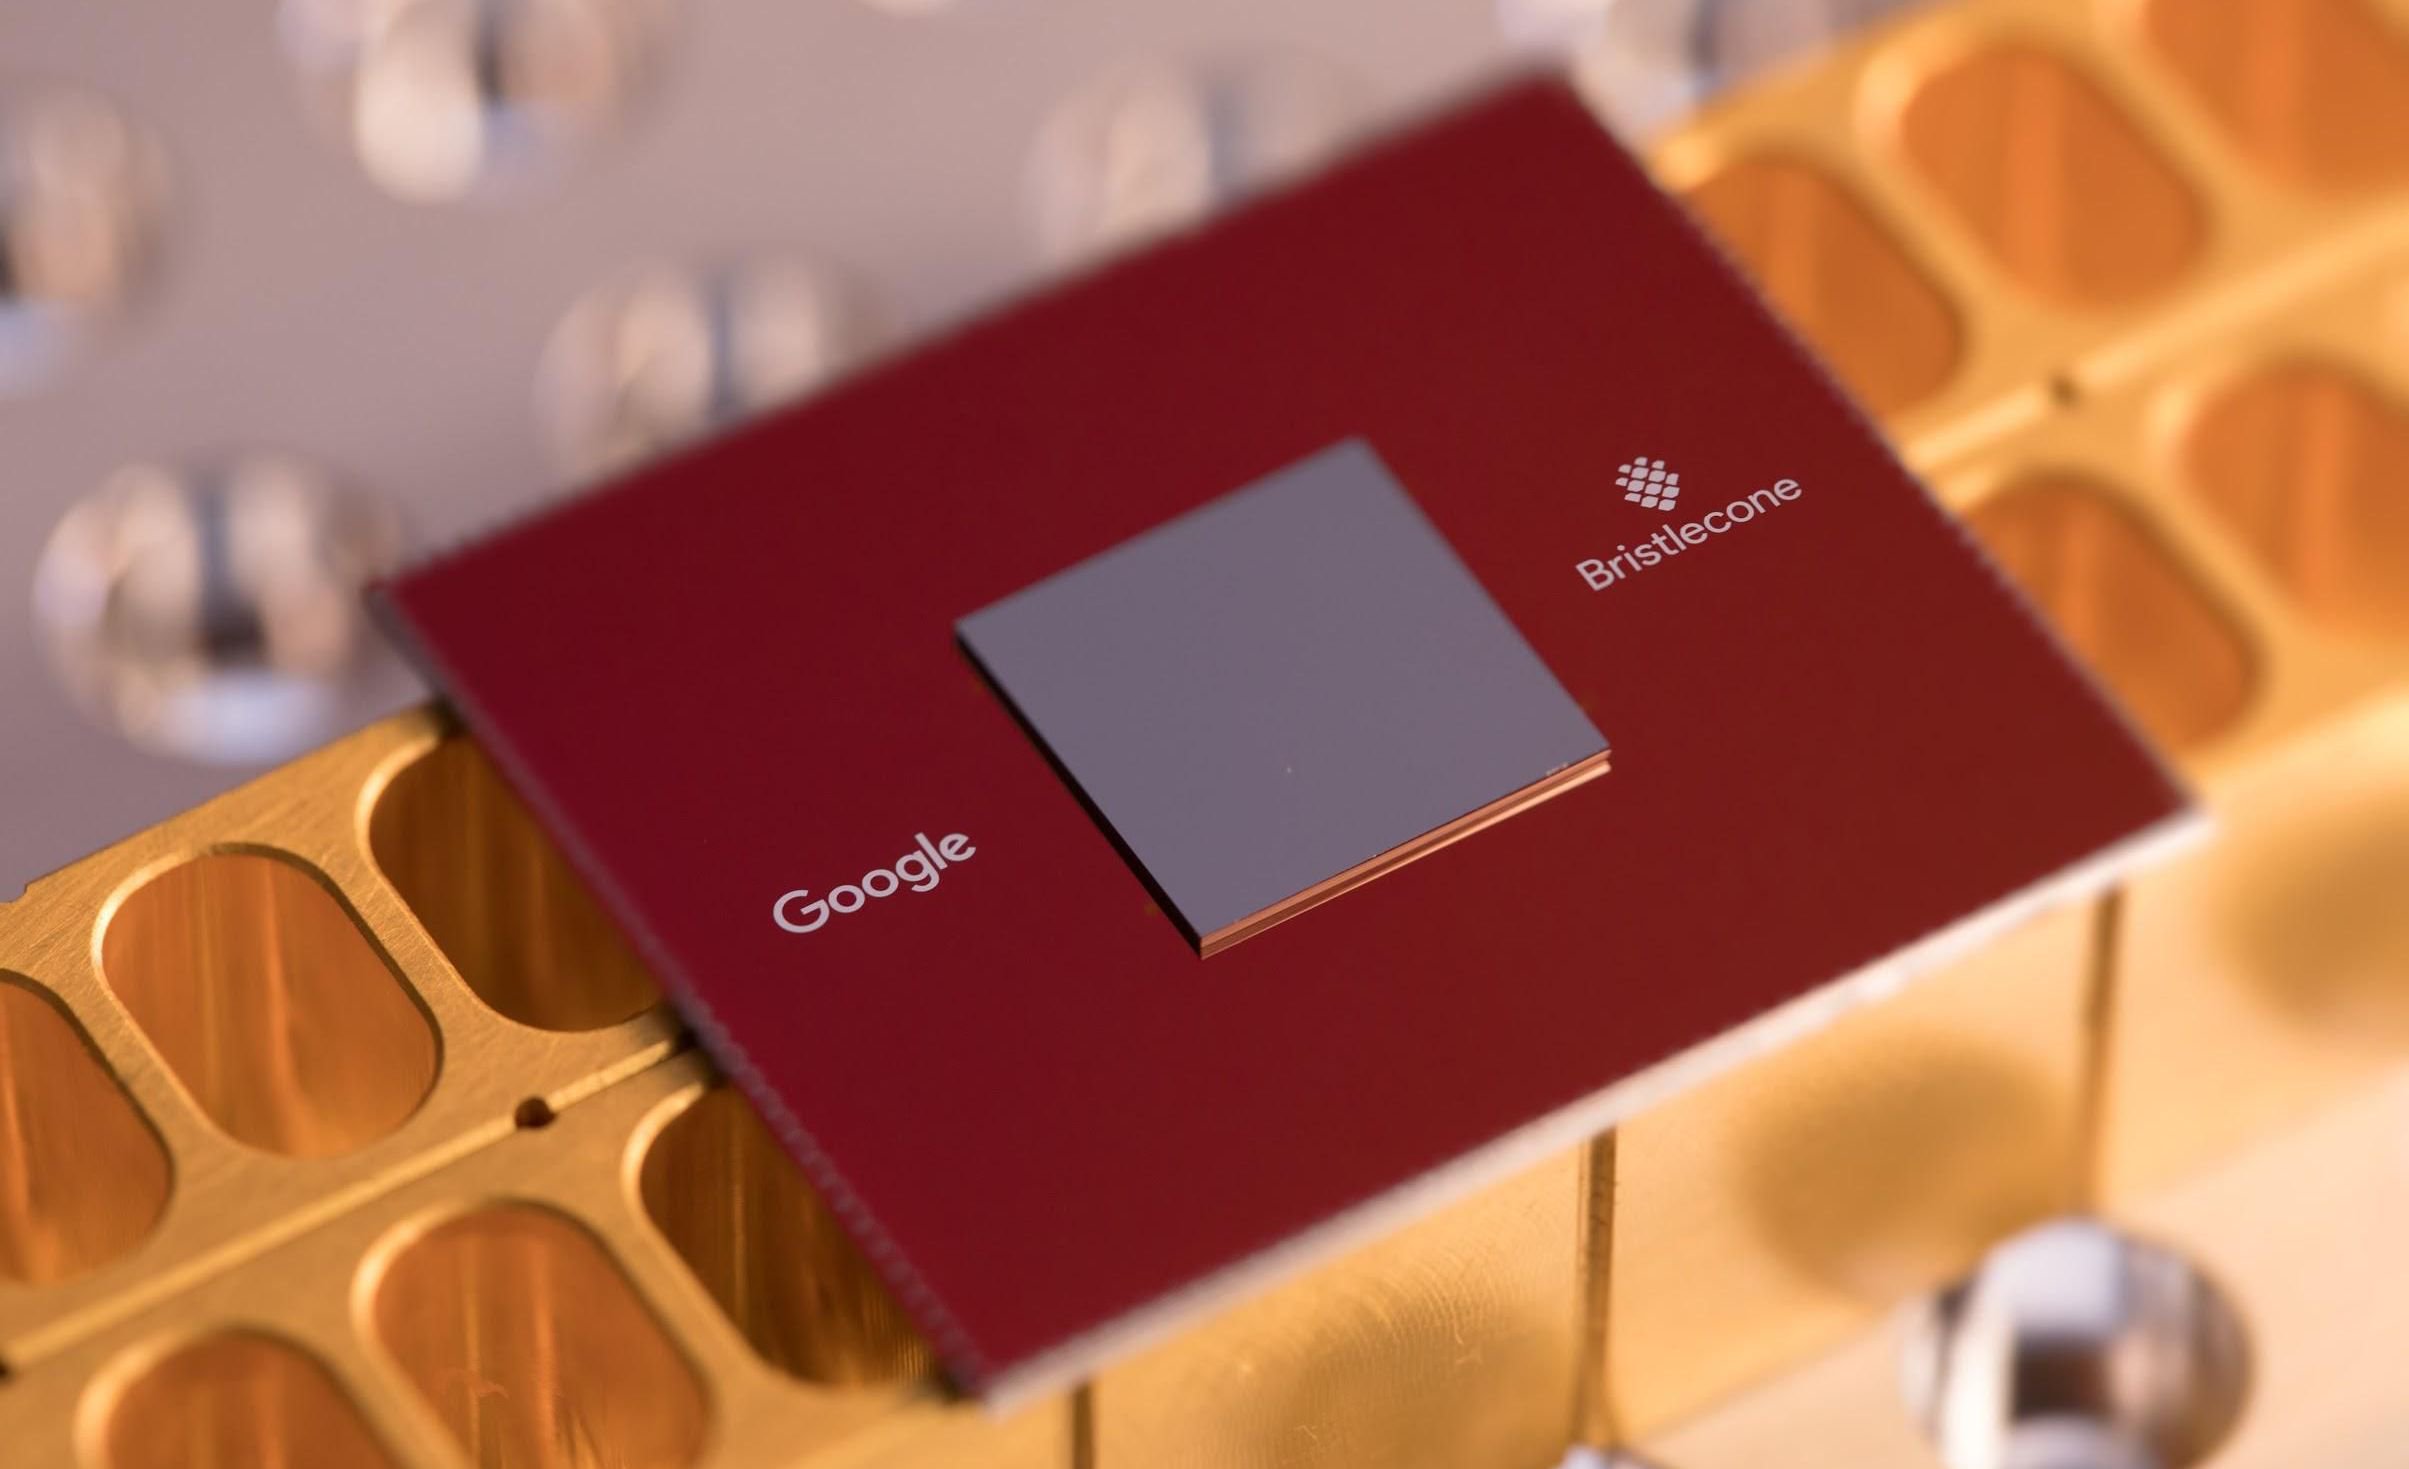 Google har afsløret sin nye quantum processor Børstekogle